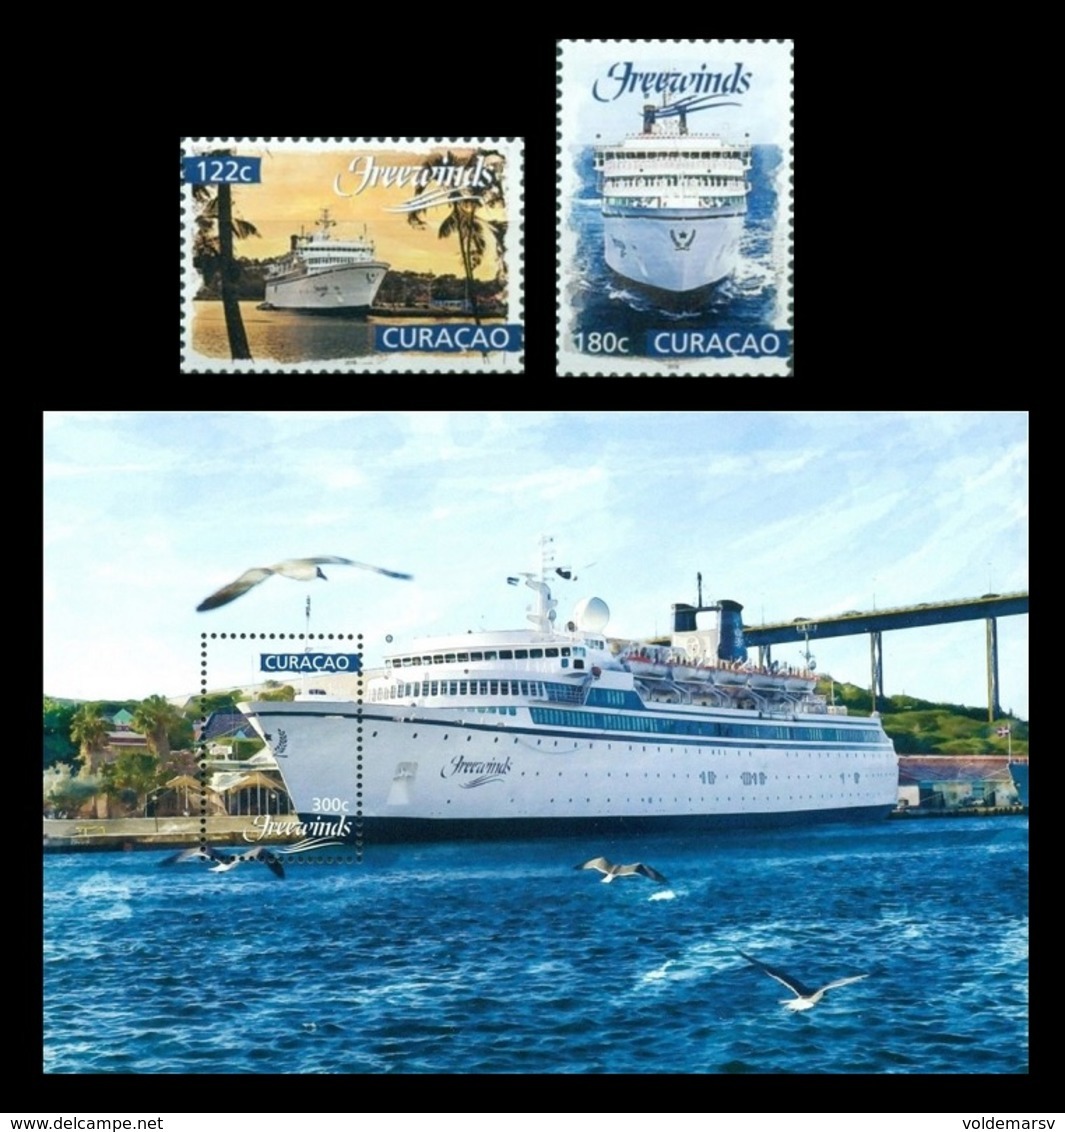 Curacao 2018 Mih. 458/59 + 460 (Bl.27) Ship Freewinds In Curacao Harbour MNH ** - Curaçao, Antille Olandesi, Aruba